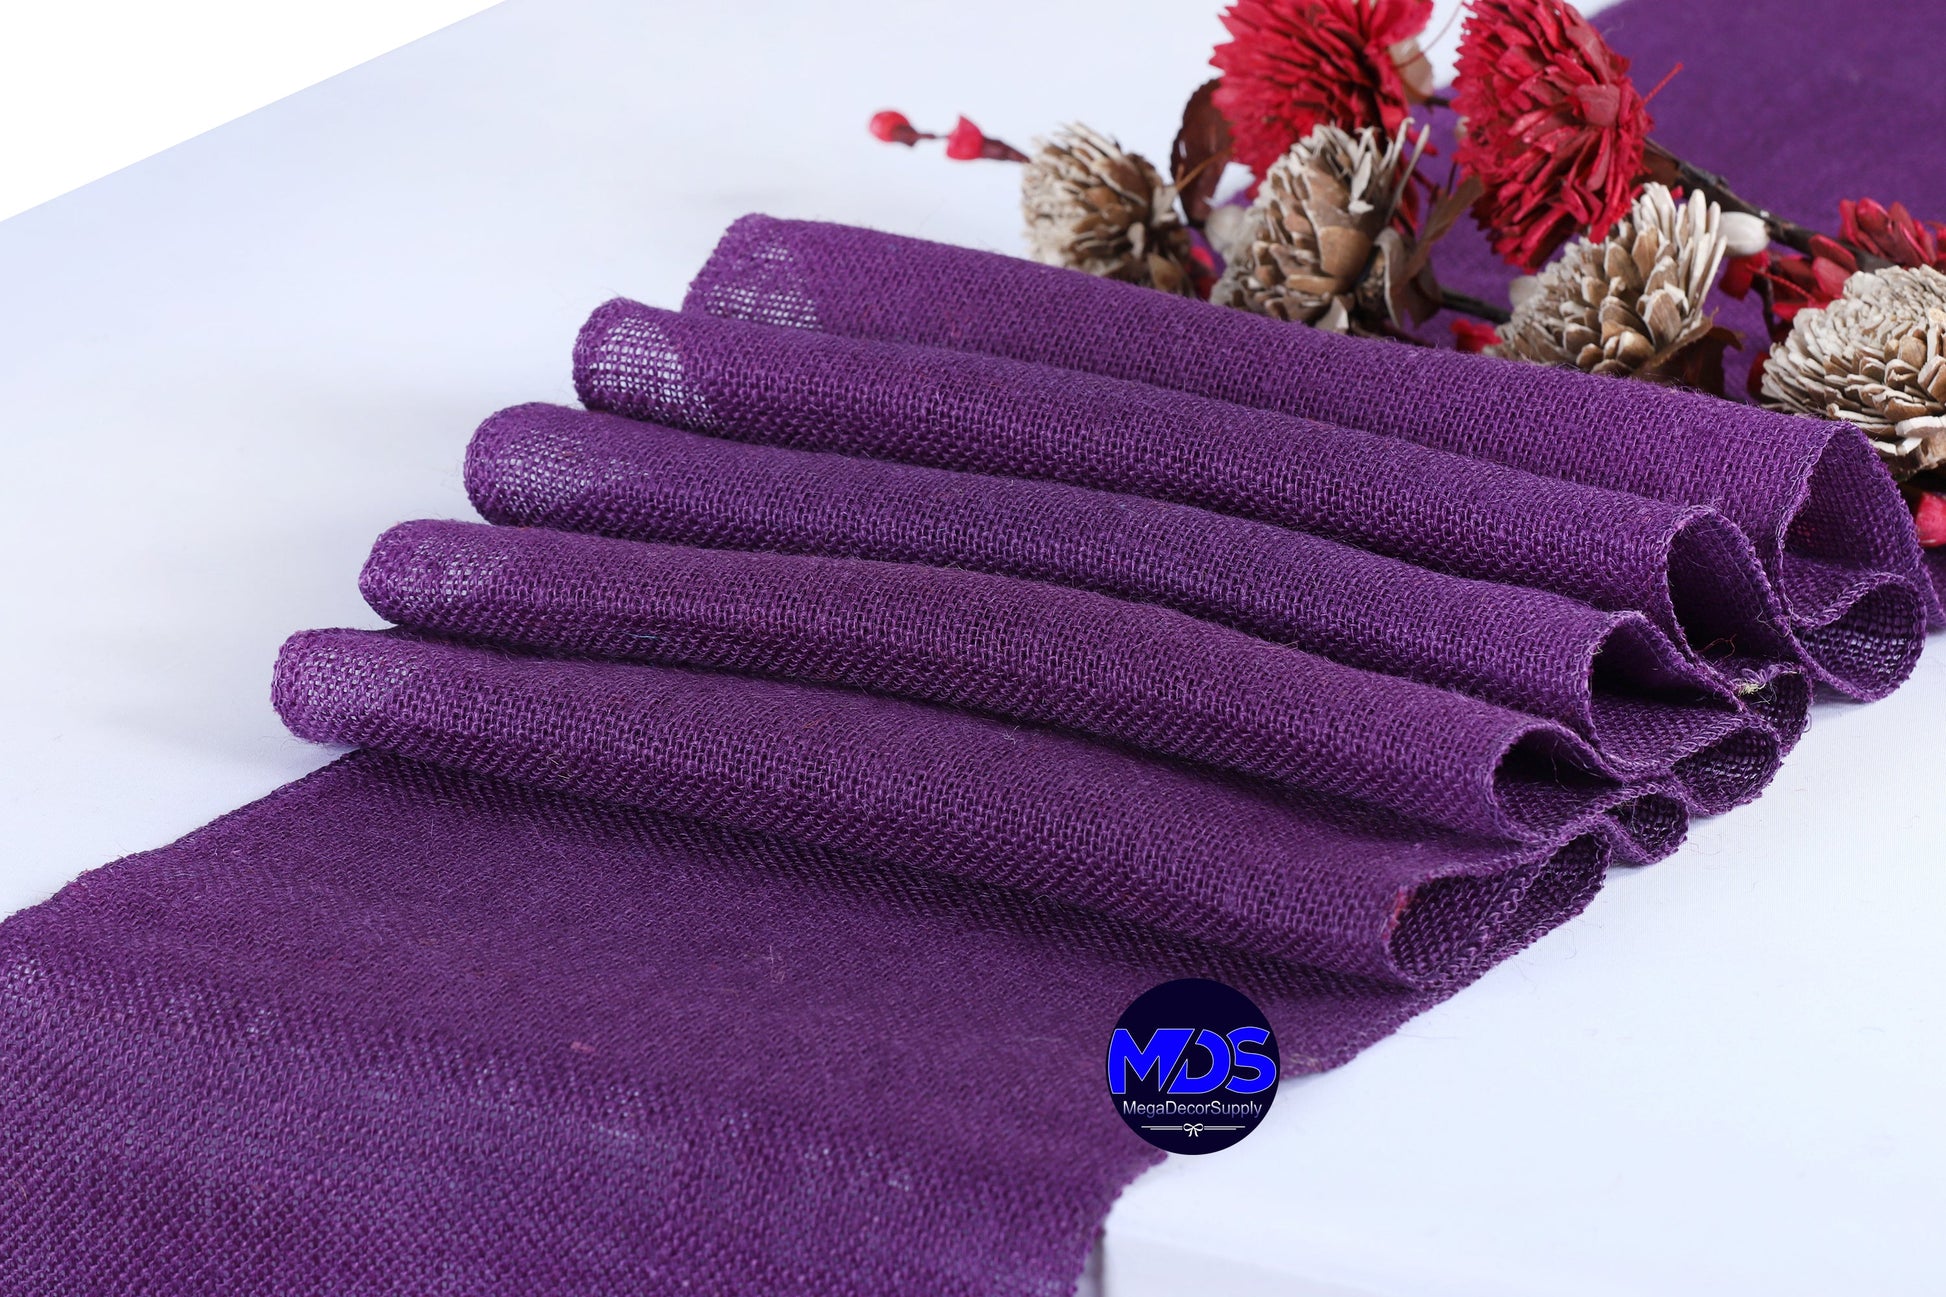 Cadbury Purple,f99a0a6b-8d38-4335-b8d2-735c9ffc5d52